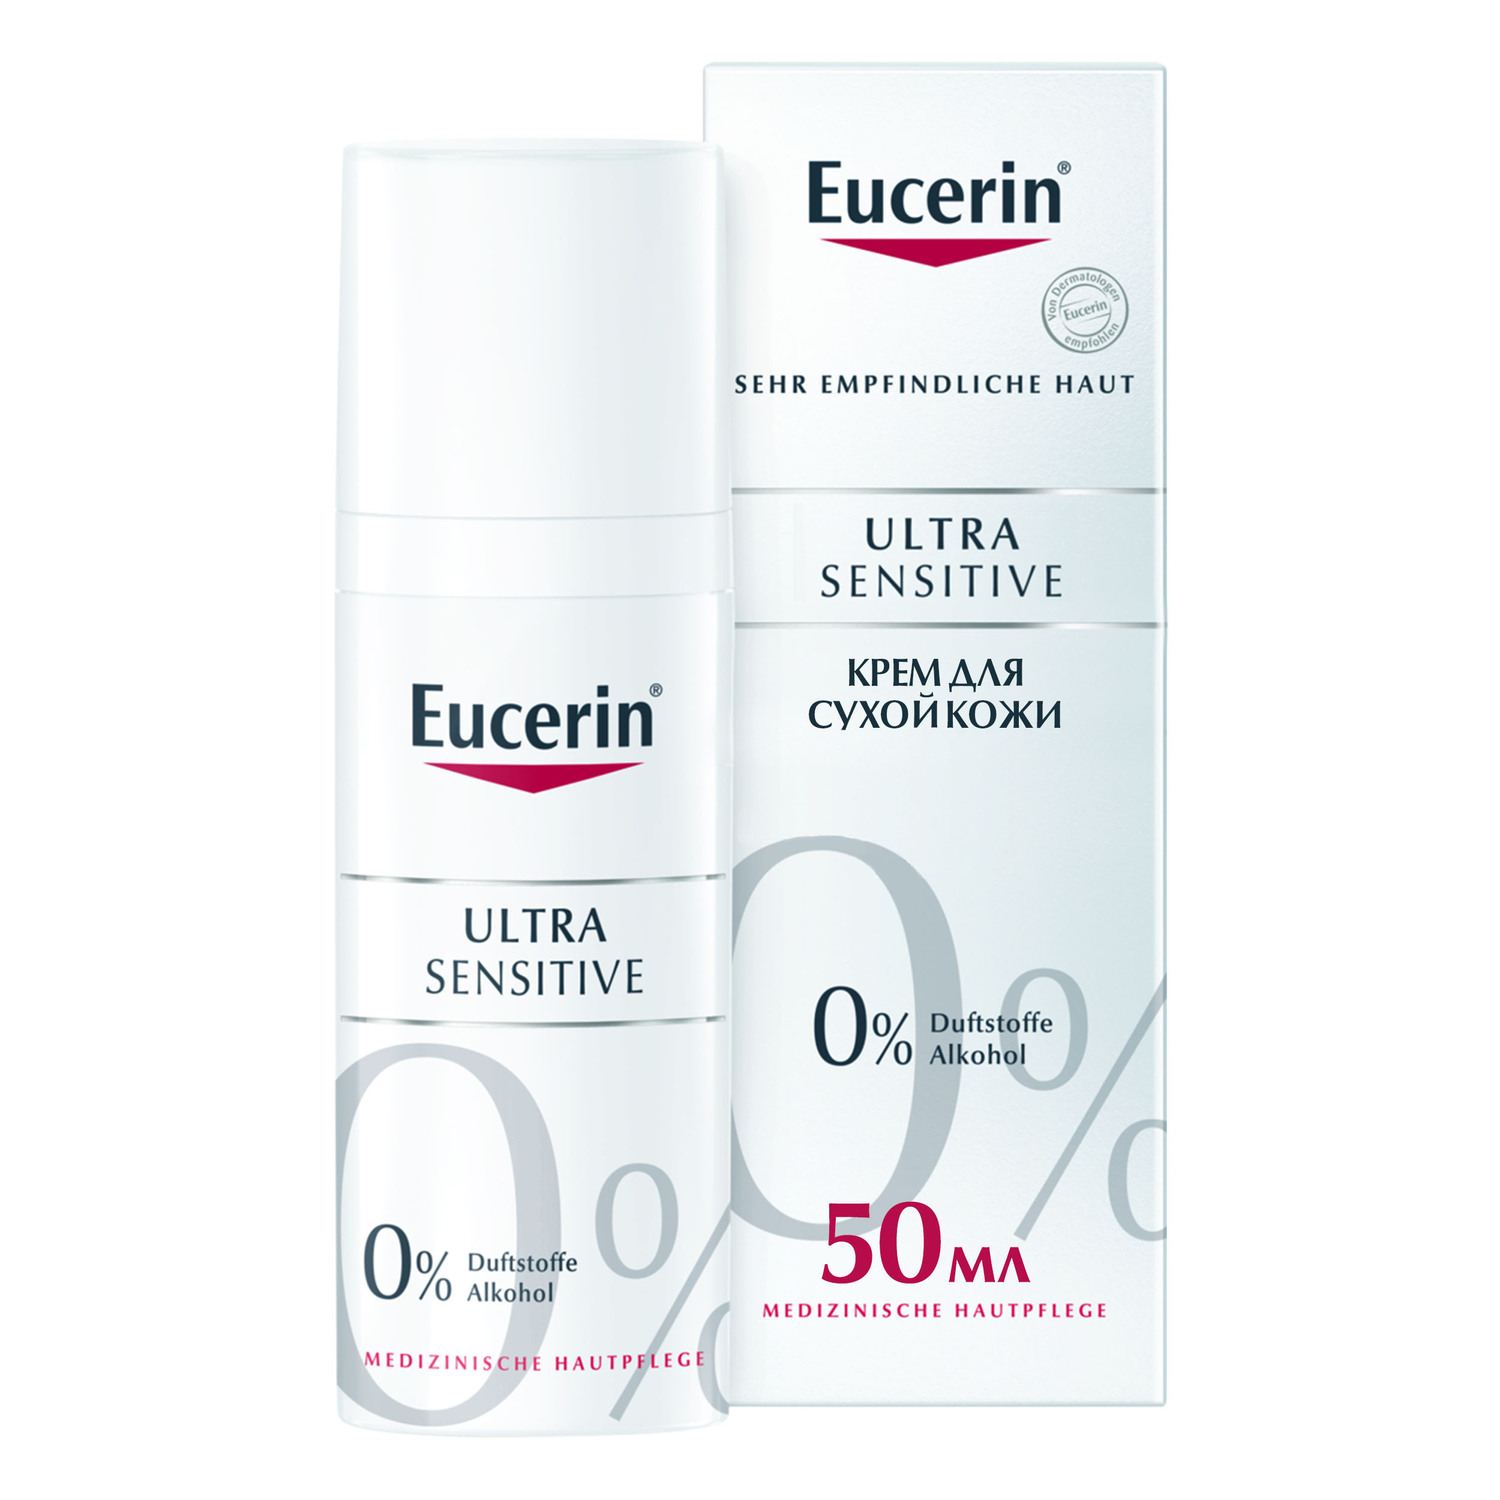 Eucerin Успокаивающий крем для чувствительной сухой кожи, 50 мл (Eucerin, UltraSensitive & AntiRedness) успокаивающий крем eucerin antiredness 50 мл